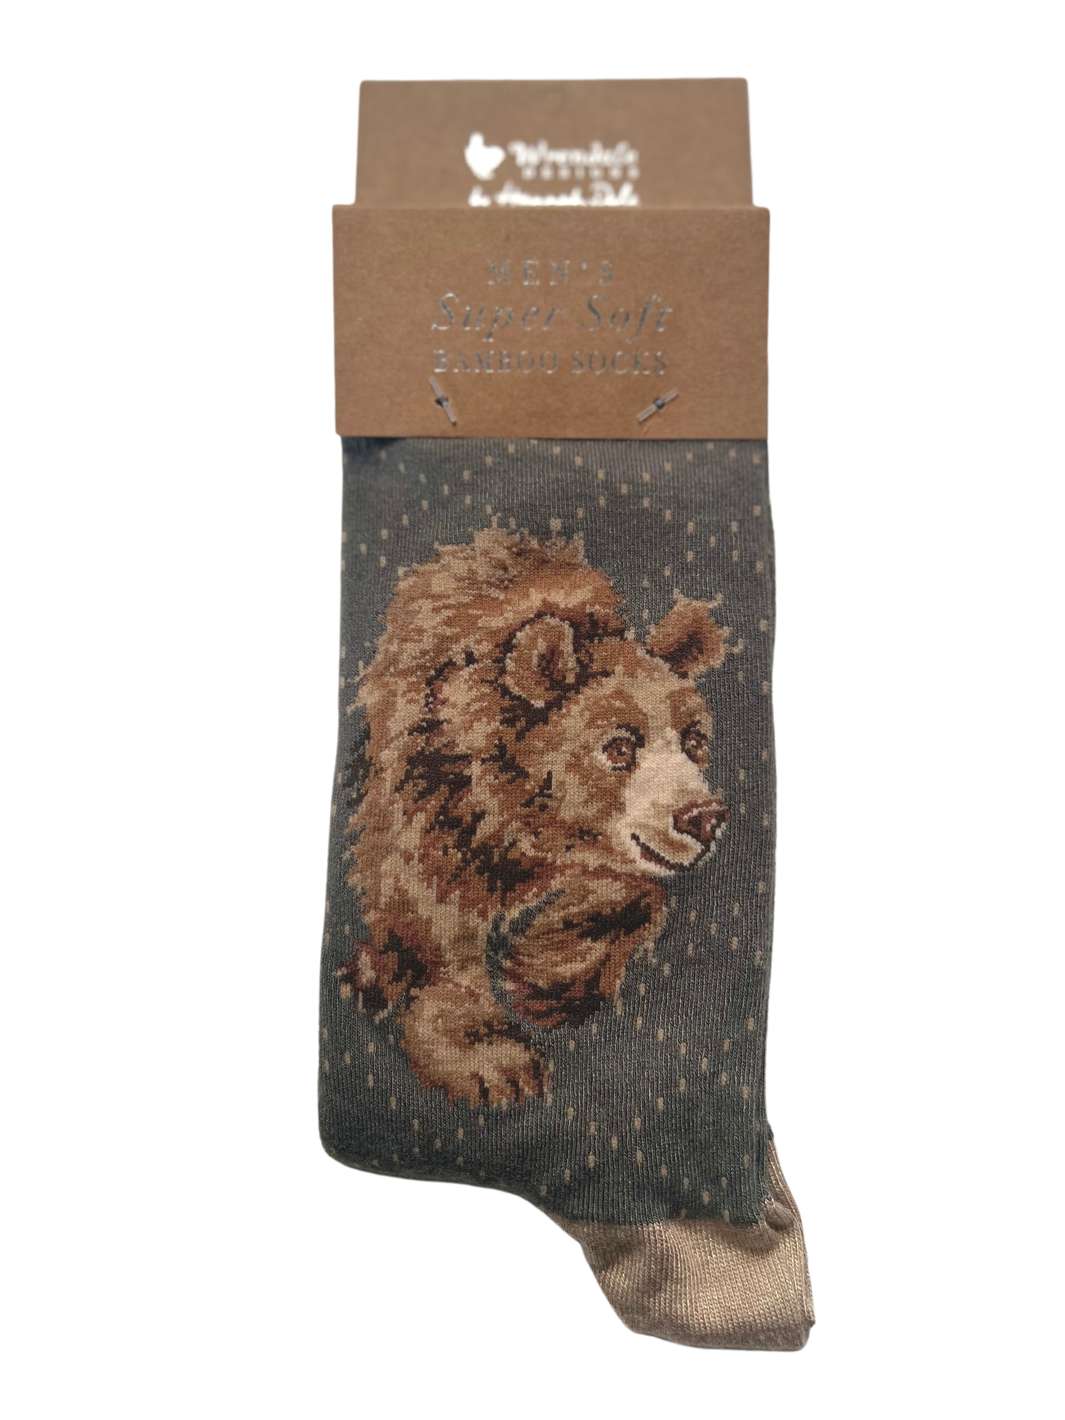 Socken mit Bären-Motiv von Wrendale Designs